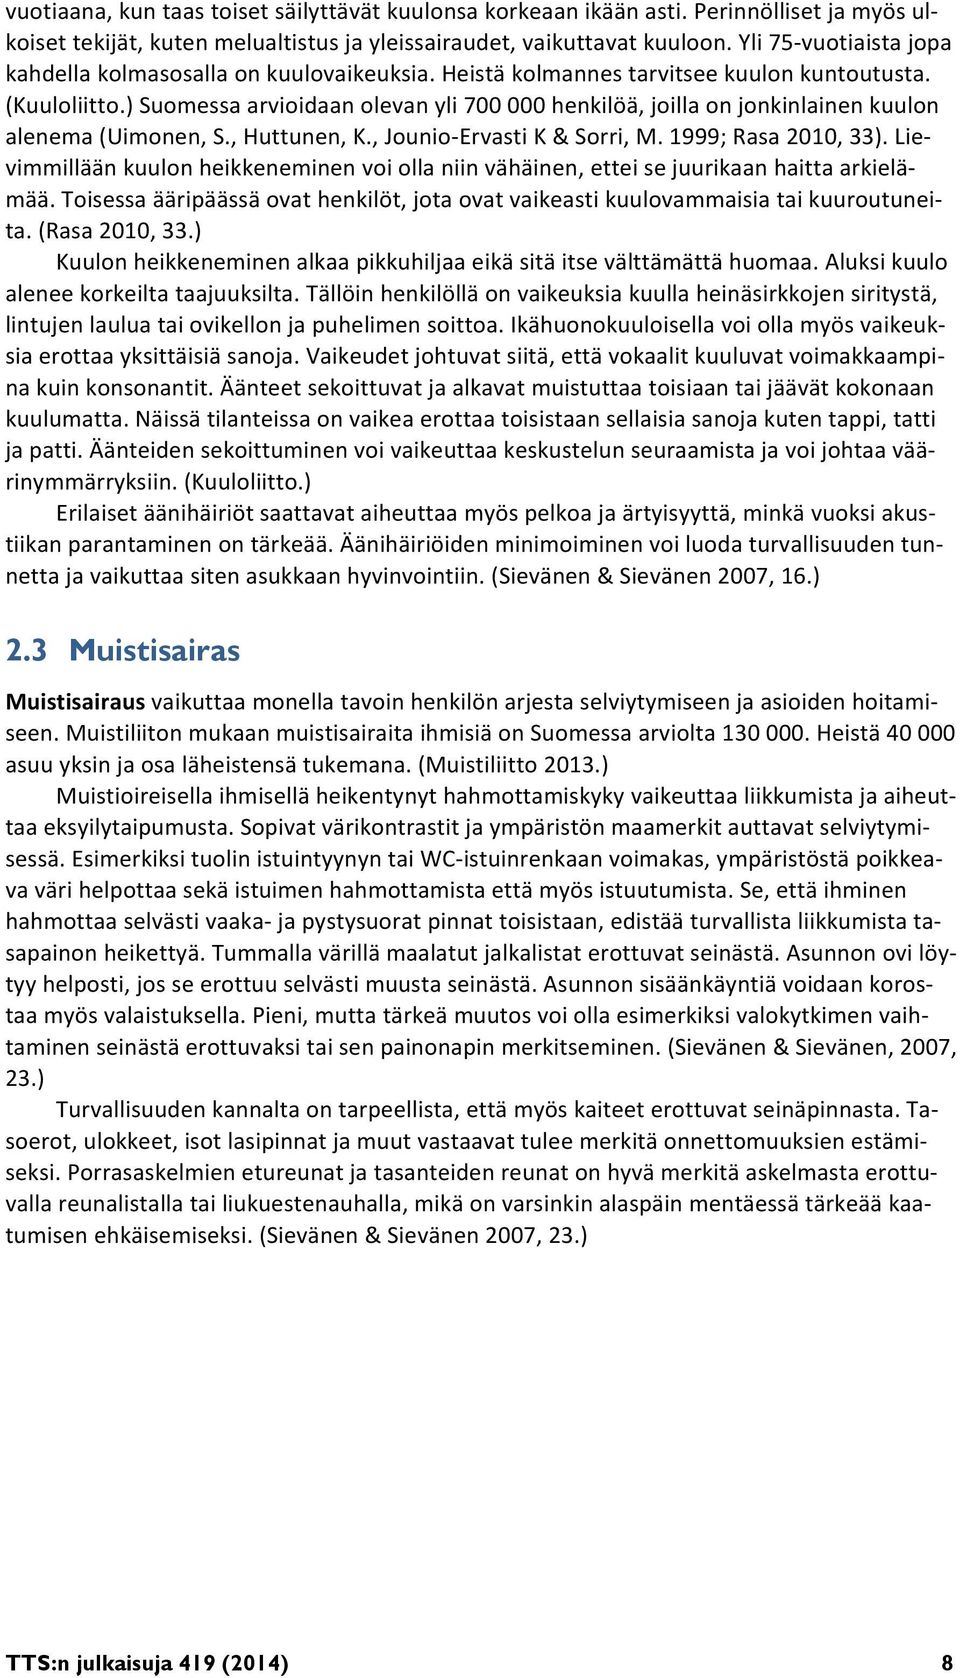 ) Suomessa arvioidaan olevan yli 700 000 henkilöä, joilla on jonkinlainen kuulon alenema (Uimonen, S., Huttunen, K., Jounio Ervasti K & Sorri, M. 1999; Rasa 2010, 33).